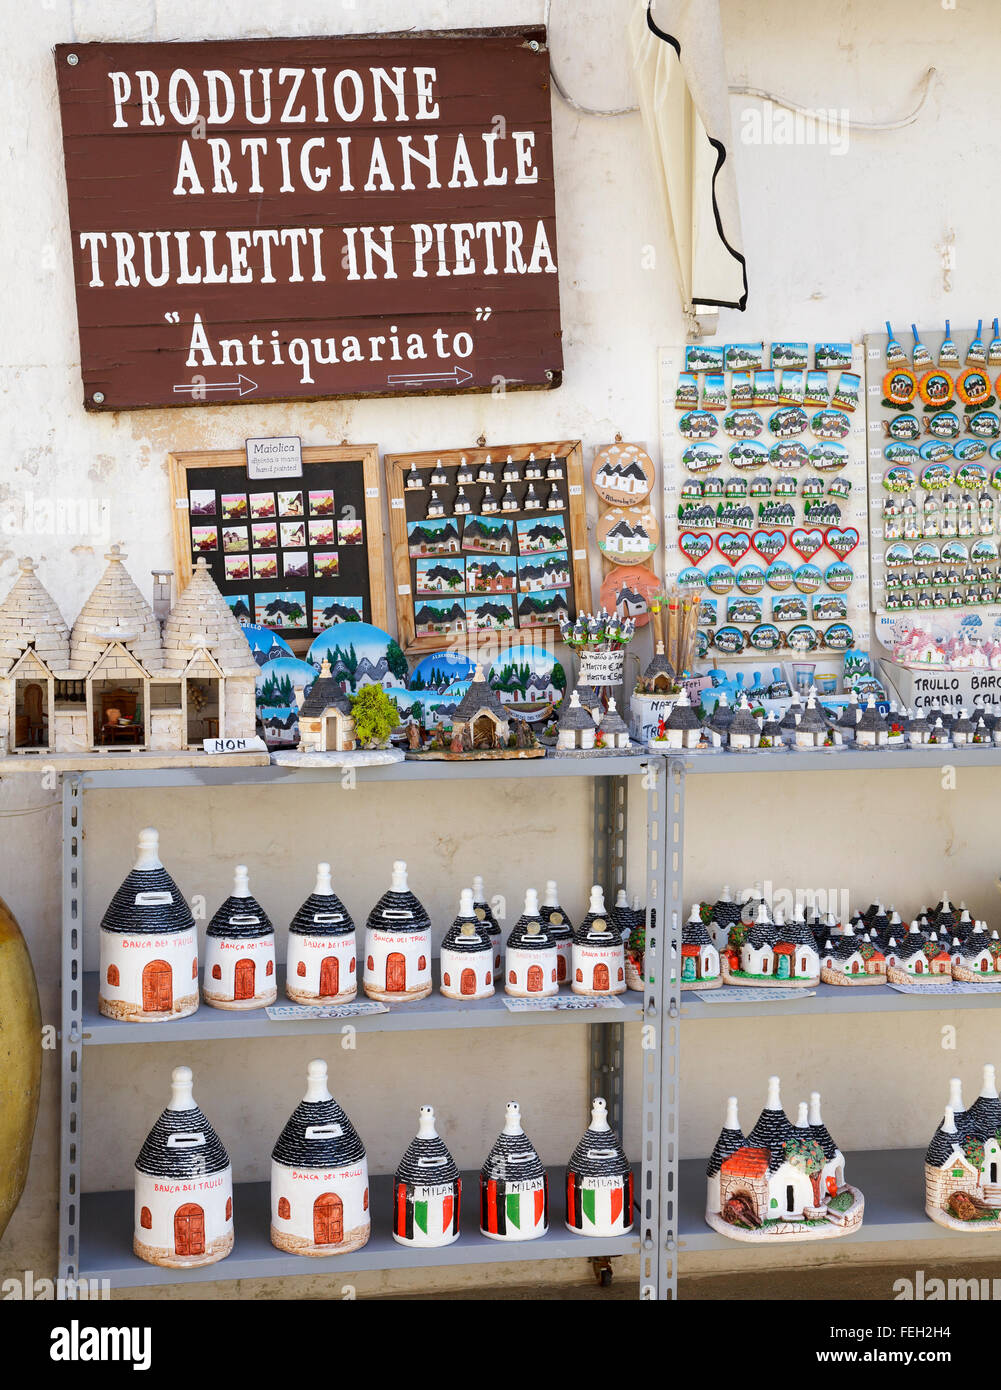 Trulli souvenirs in Alberobello, Puglia, Italy Stock Photo